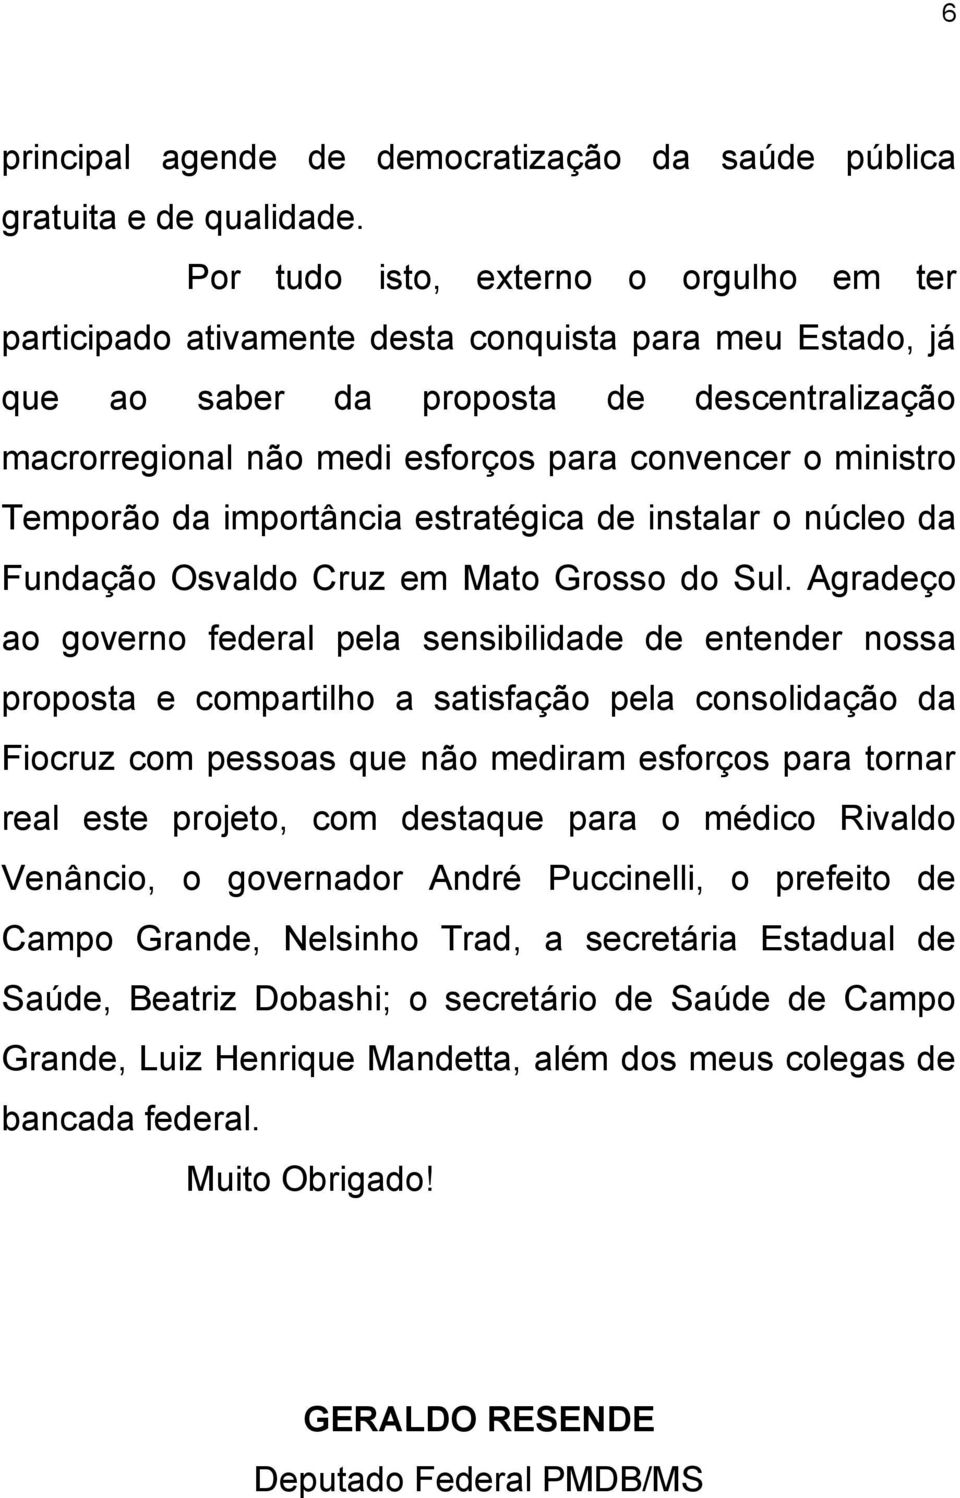 ministro Temporão da importância estratégica de instalar o núcleo da Fundação Osvaldo Cruz em Mato Grosso do Sul.